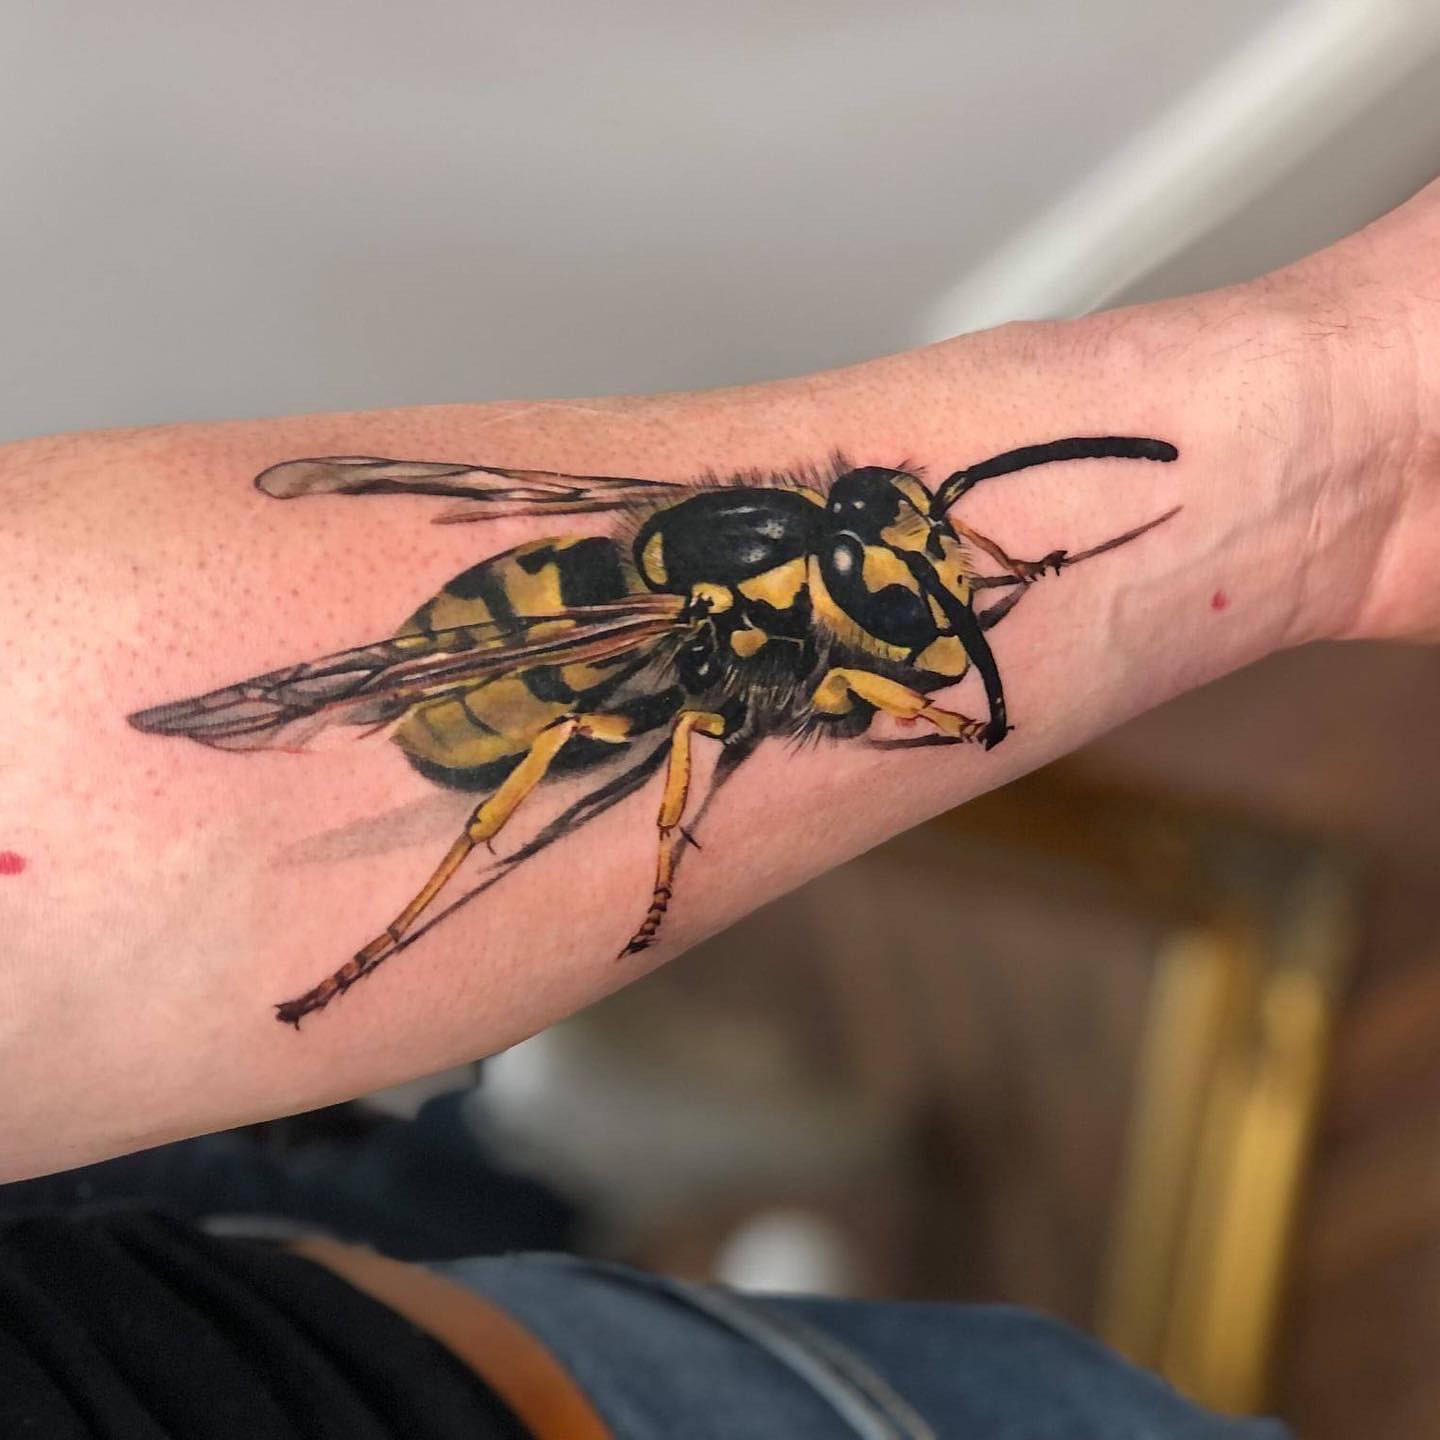 My Wasp Tattoo by MissVanessa777 on DeviantArt